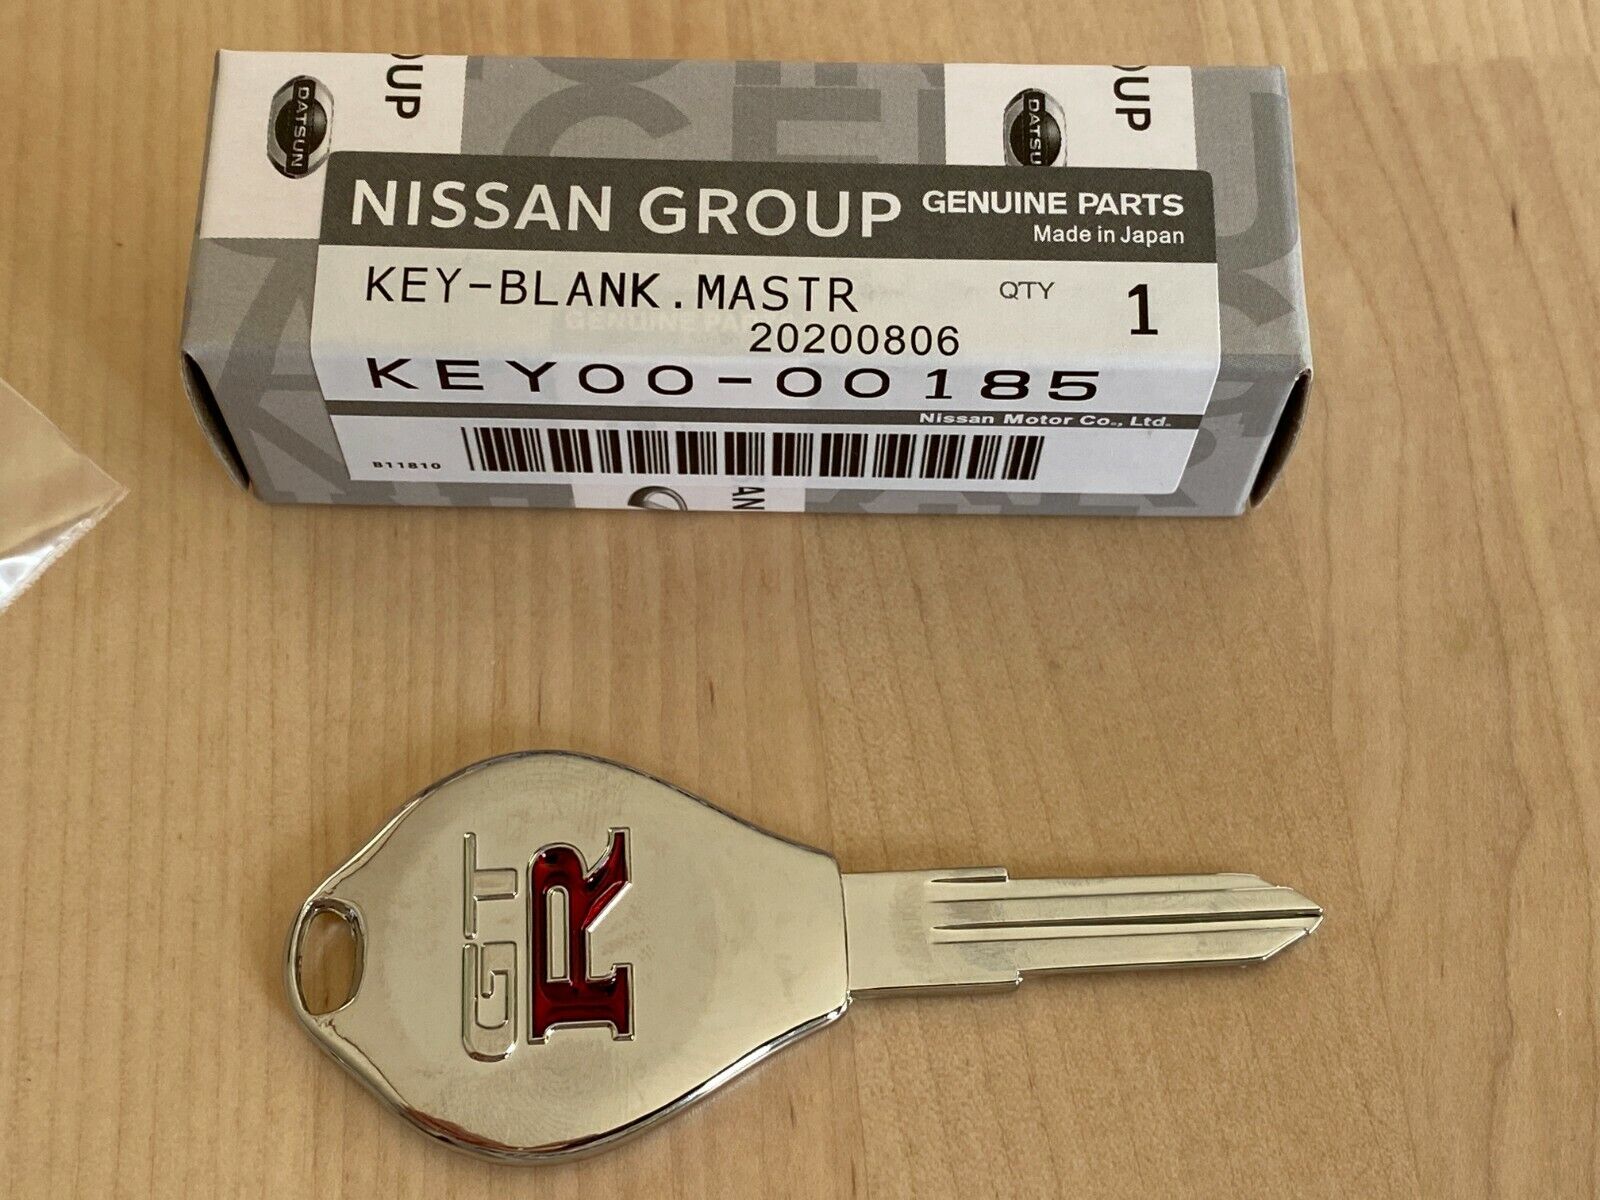 Nissan Skyline GTR, GT-R, Key Blank R32, R33, R34, KEY00-00185 KEY00-RHR30 